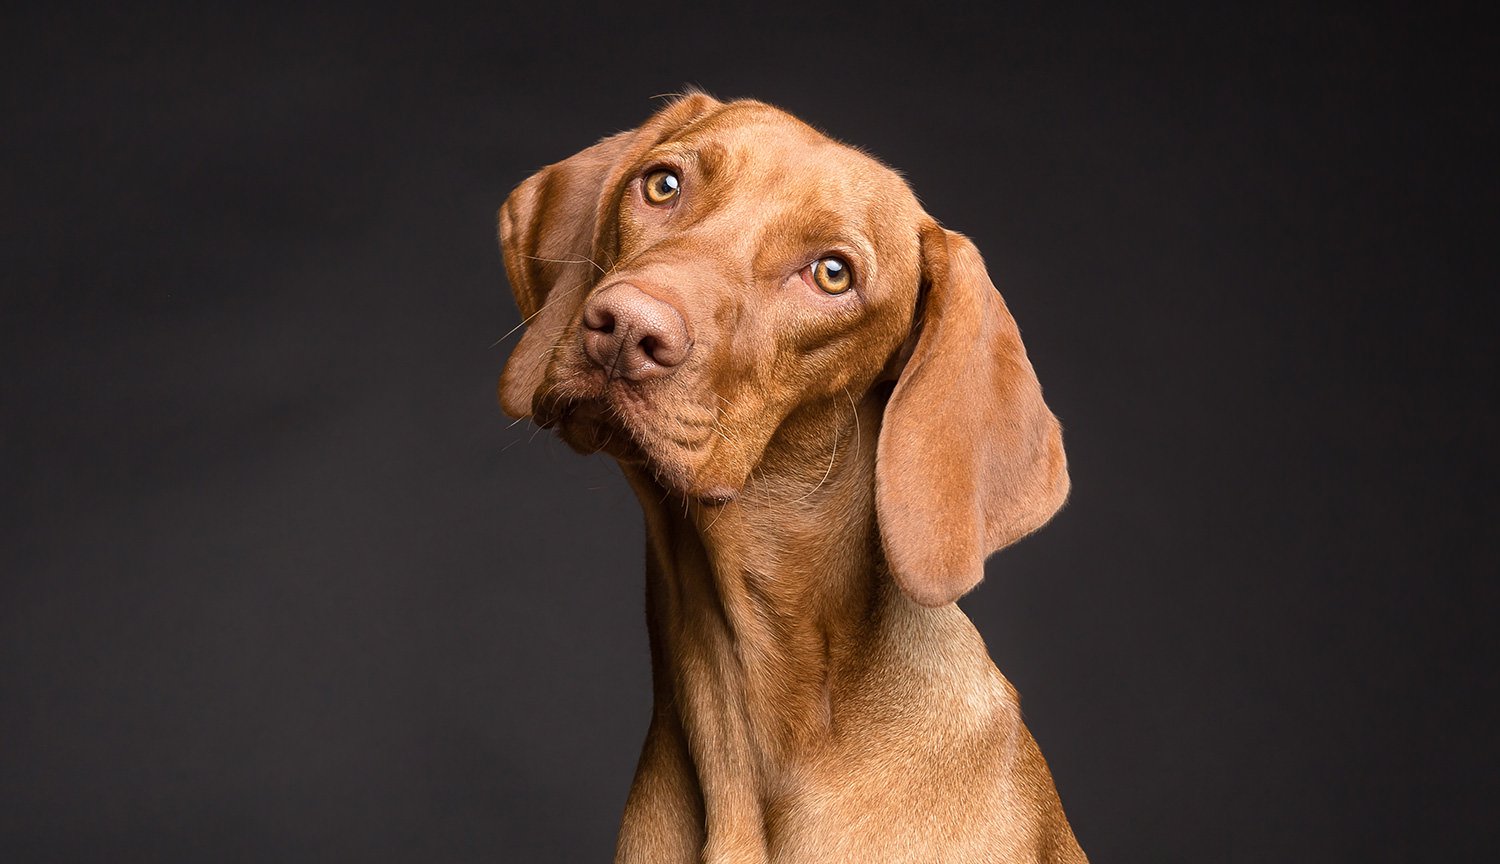 La tomographie a prouvé que les chiens ne comprennent pas la parole humaine